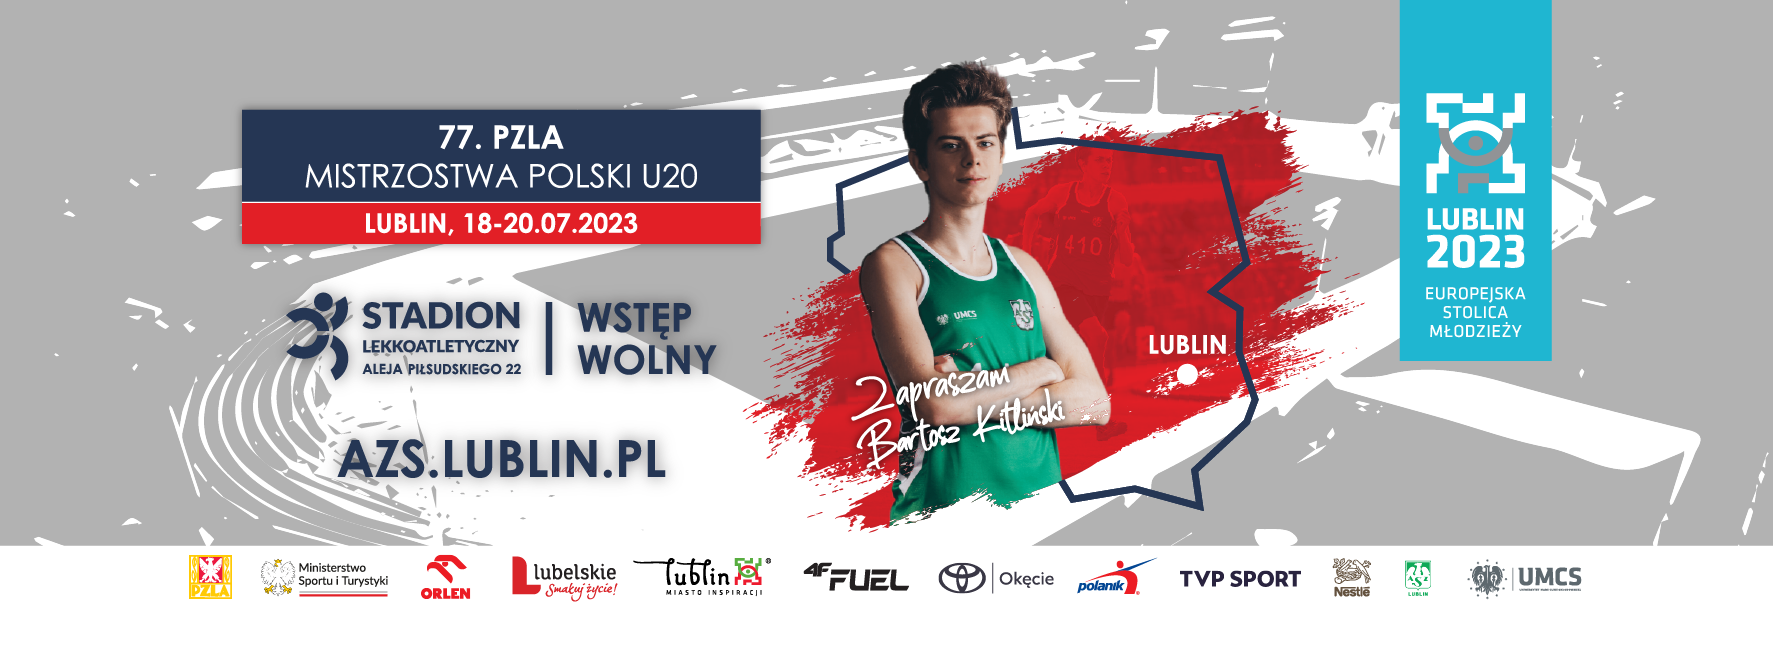 77. PZLA Mistrzostwa Polski U20 - zapowiedź